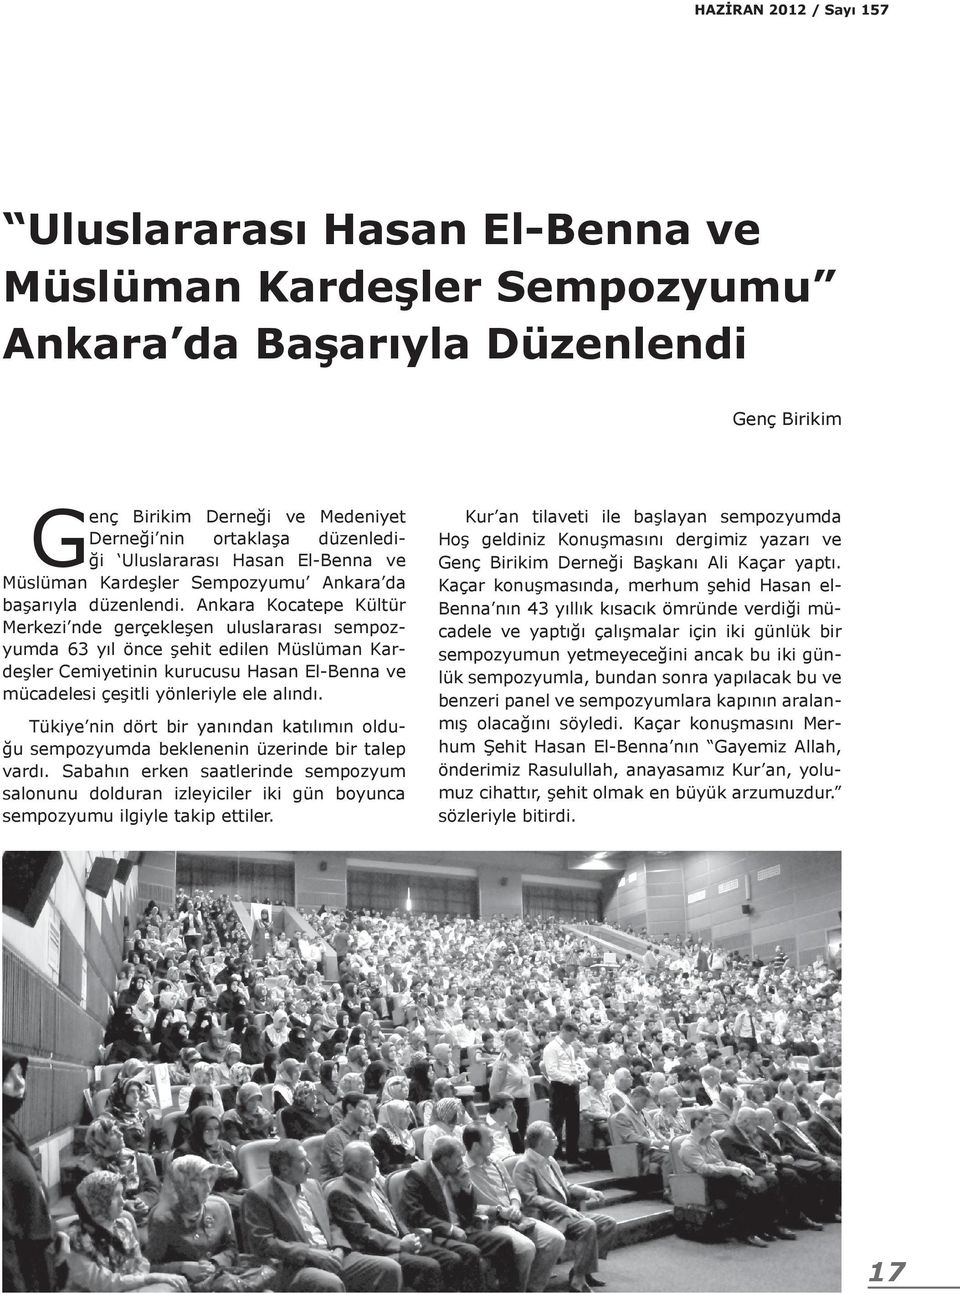 Ankara Kocatepe Kültür Merkezi nde gerçekleşen uluslararası sempozyumda 63 yıl önce şehit edilen Müslüman Kardeşler Cemiyetinin kurucusu Hasan El-Benna ve mücadelesi çeşitli yönleriyle ele alındı.